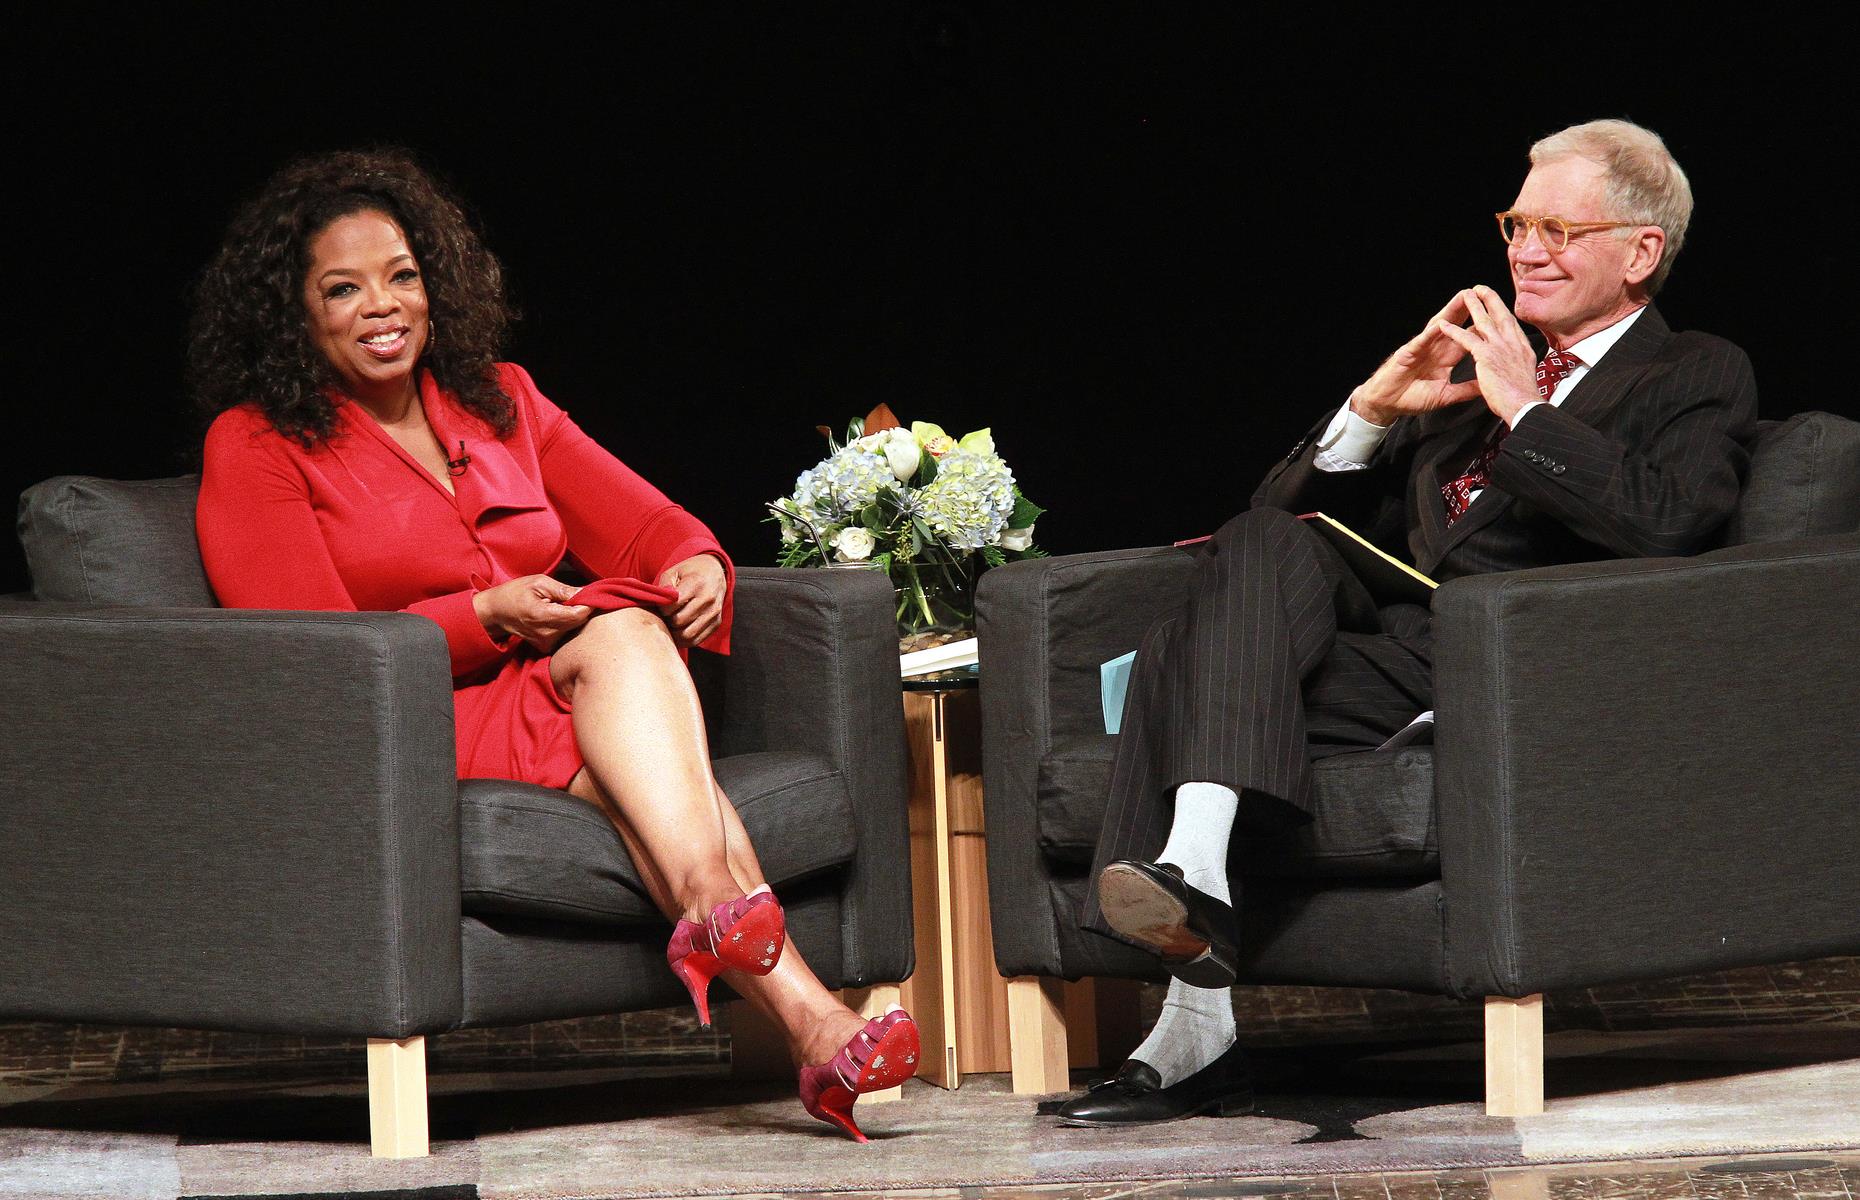 Oprah Winfrey: then